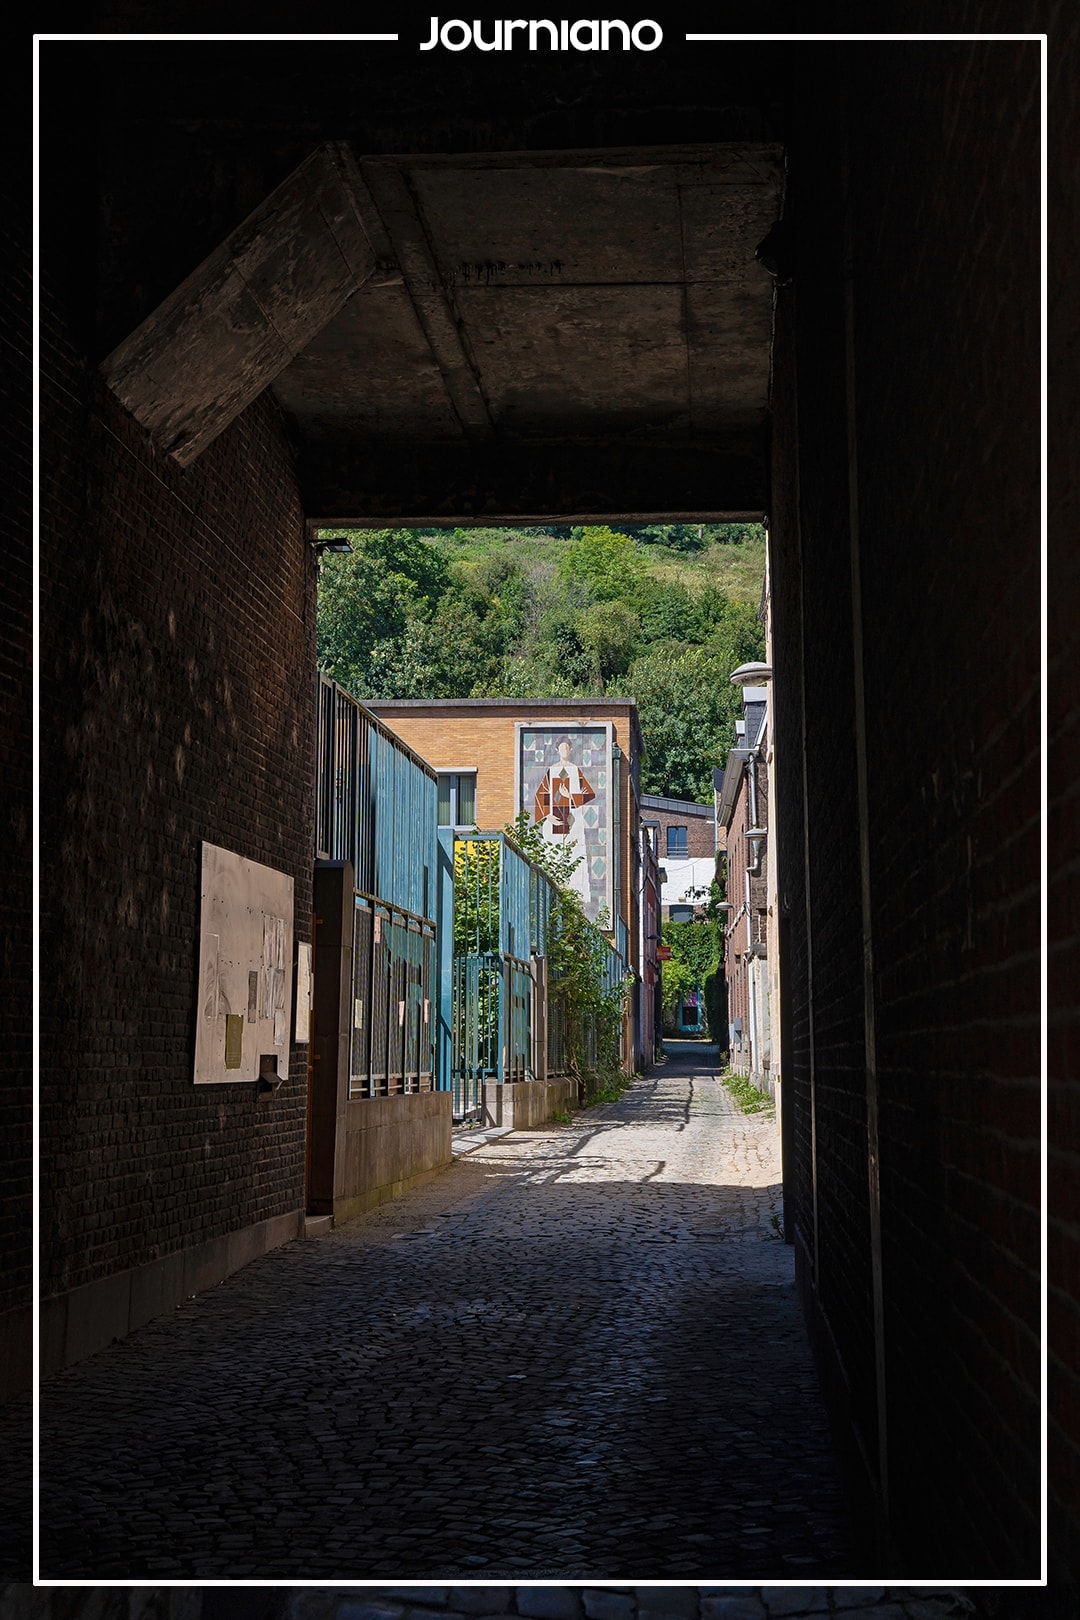 Les Impasses du Quartier Hors-Château - Intriguing Alleys in Liège